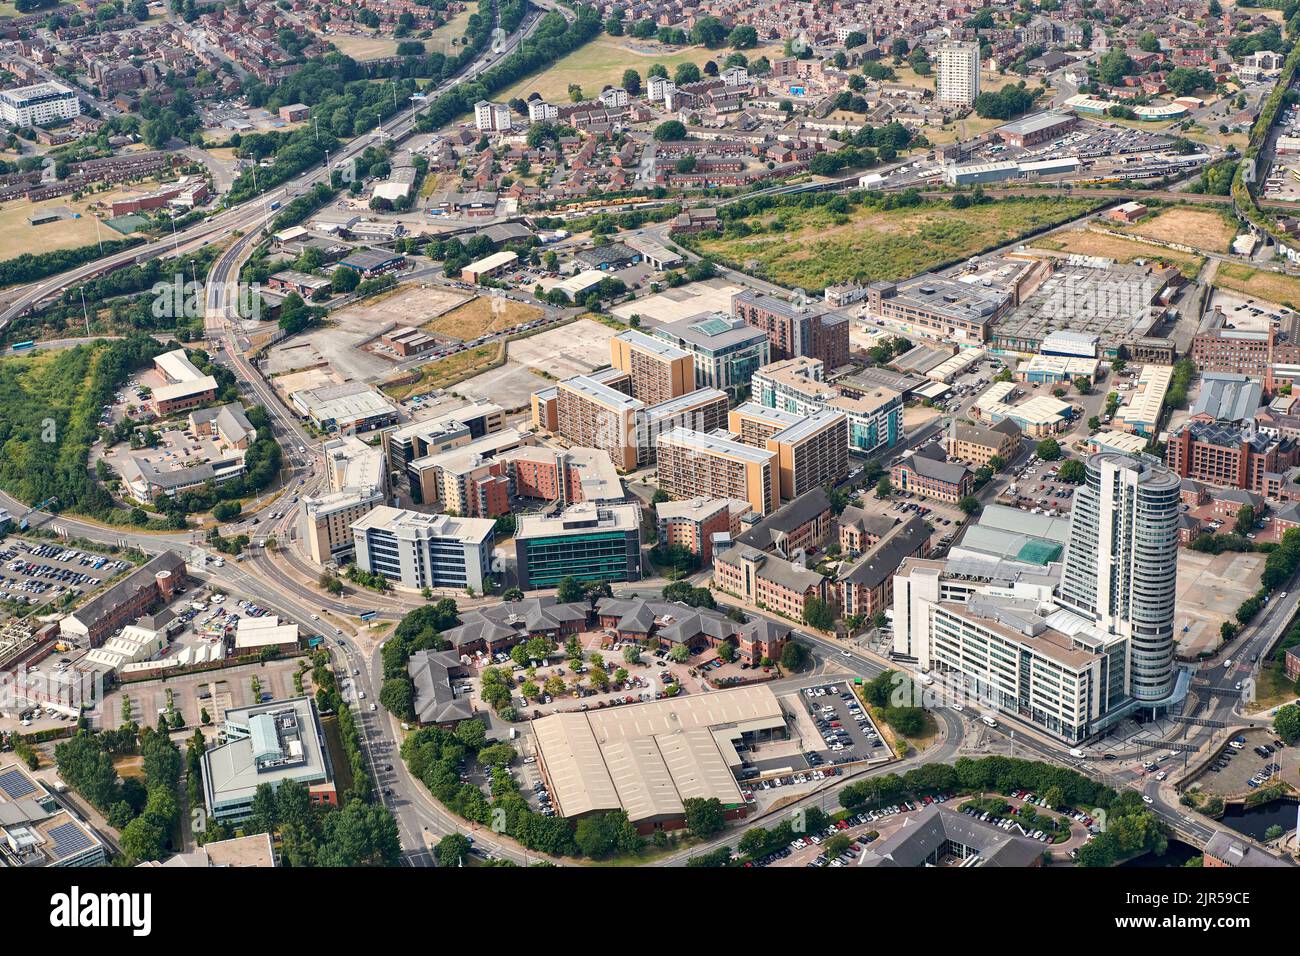 Una fotografia aerea dell'area di Holbeck a sud del centro di Leeds, Yorkshire occidentale, Inghilterra settentrionale, Regno Unito Foto Stock